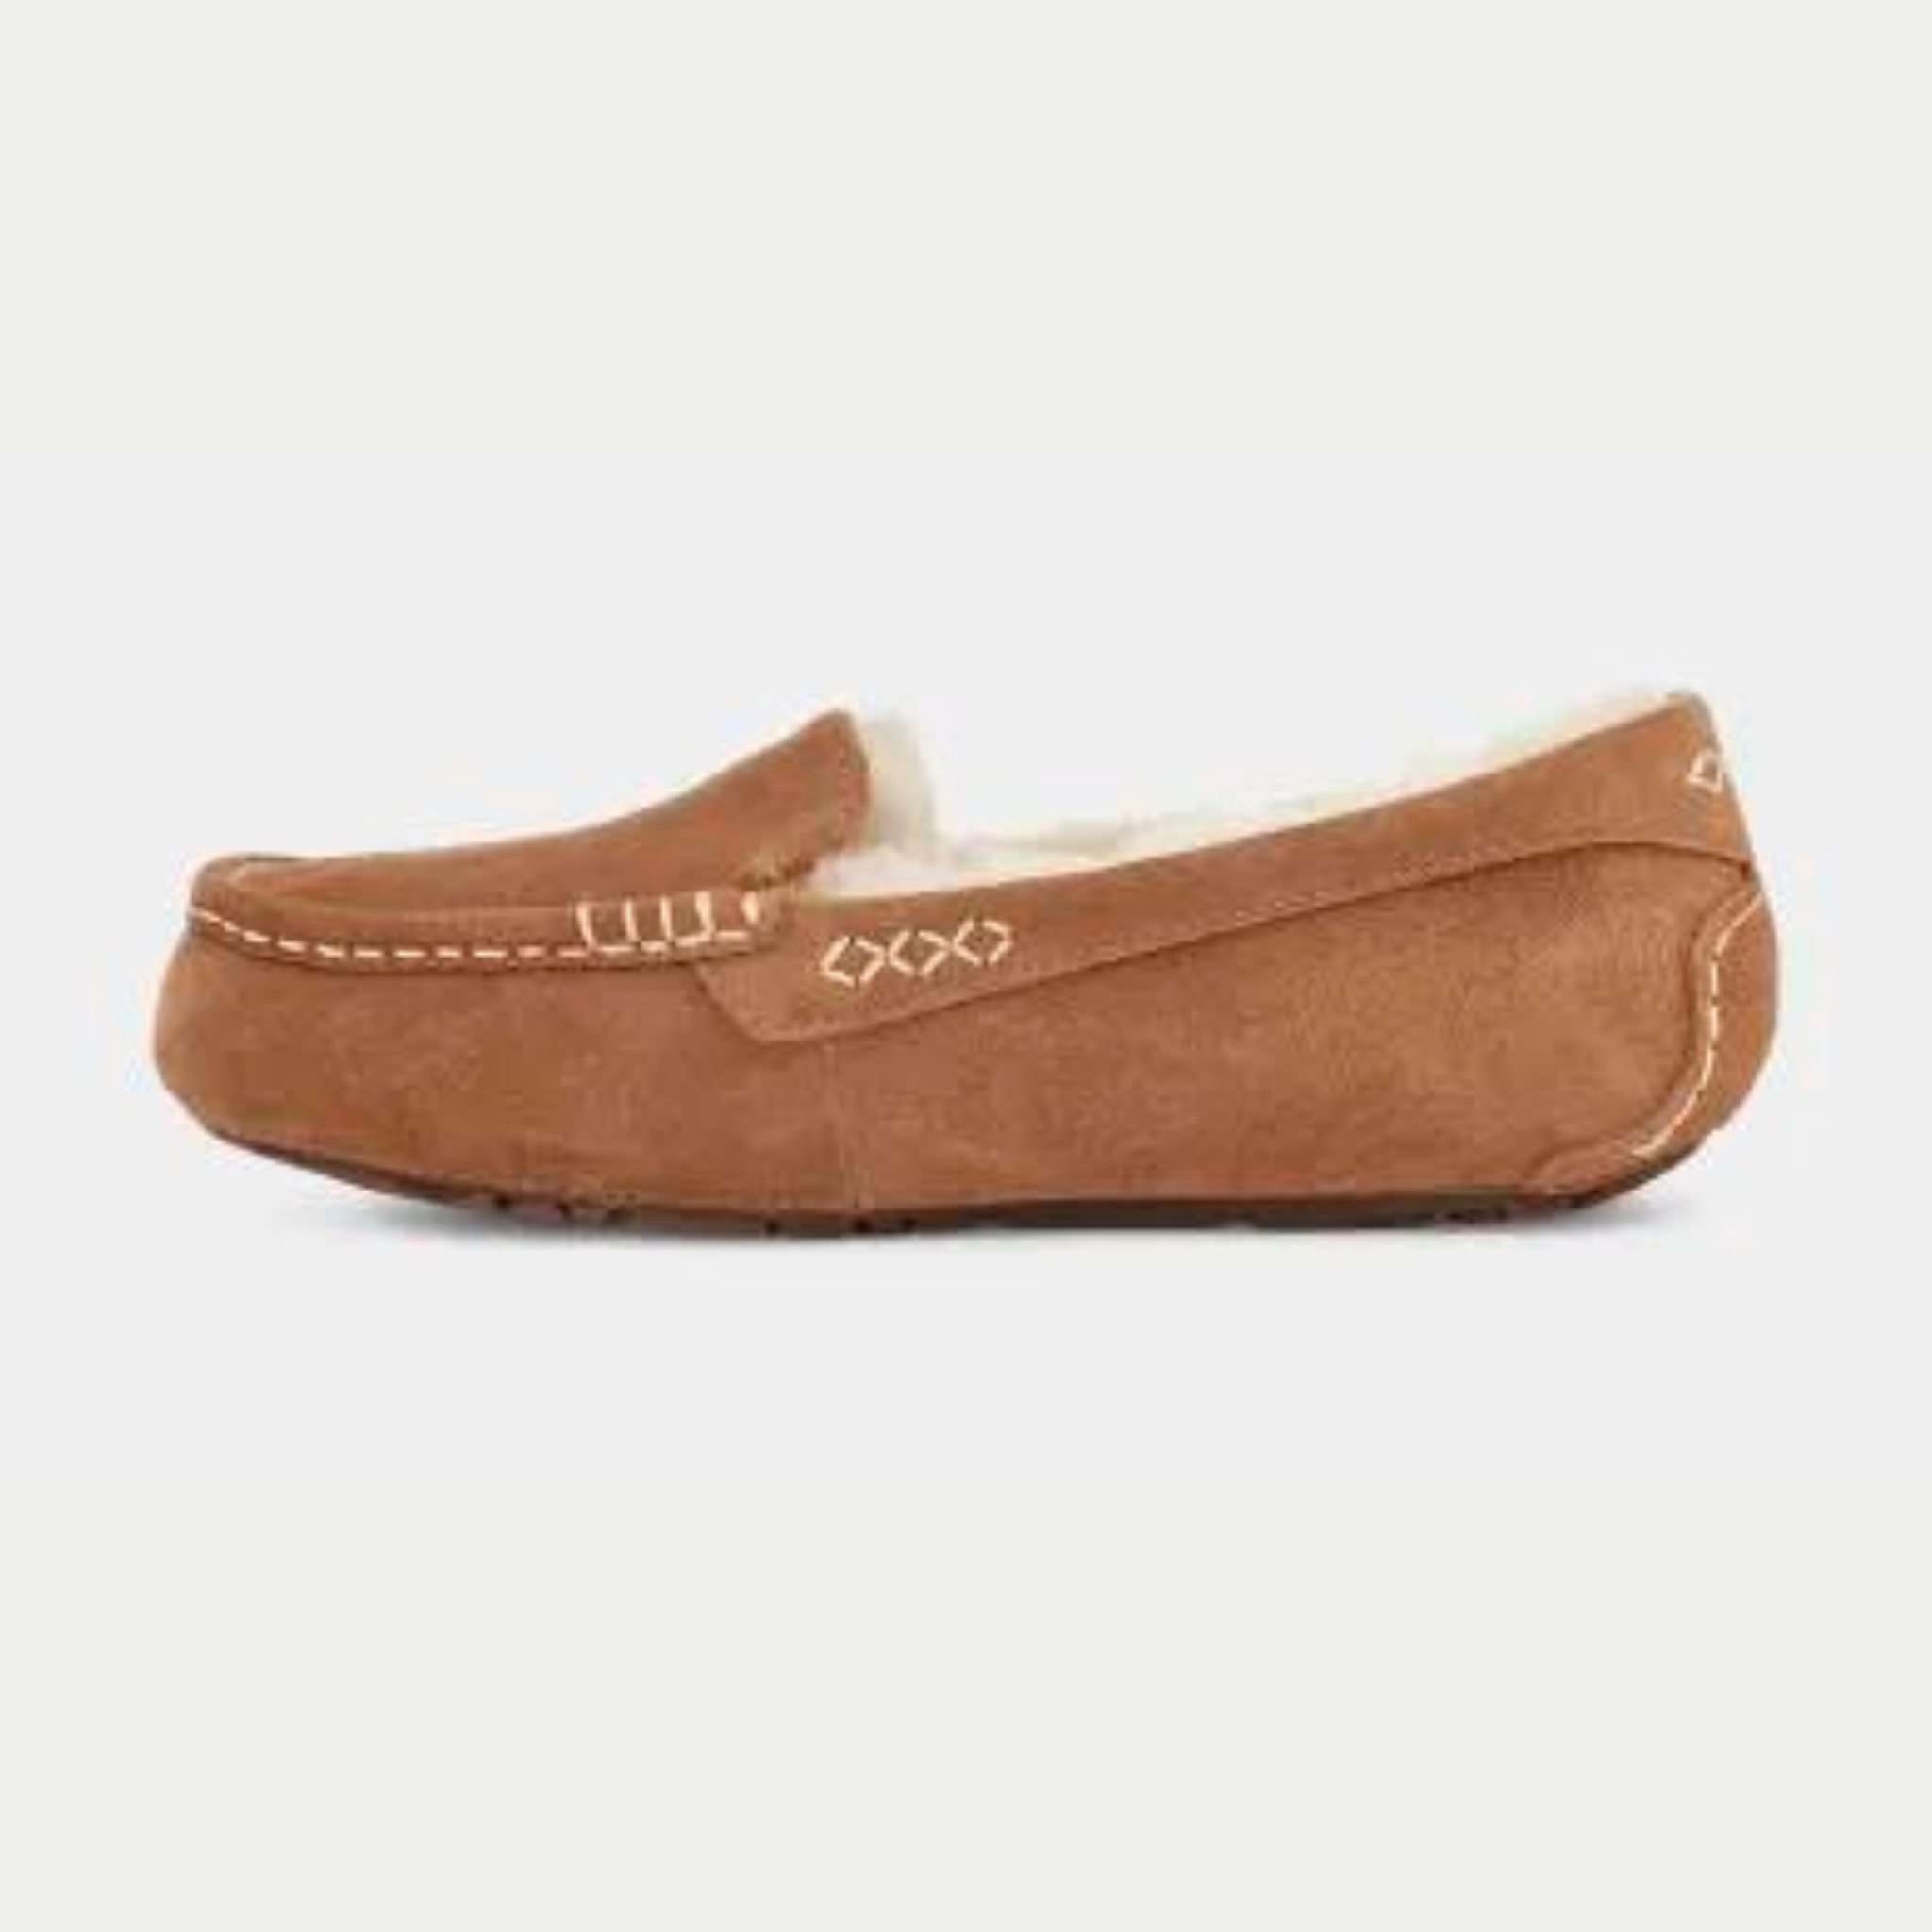 Ugg Ansley Slipper in Chestnut ZW15 – Bellino Shoes